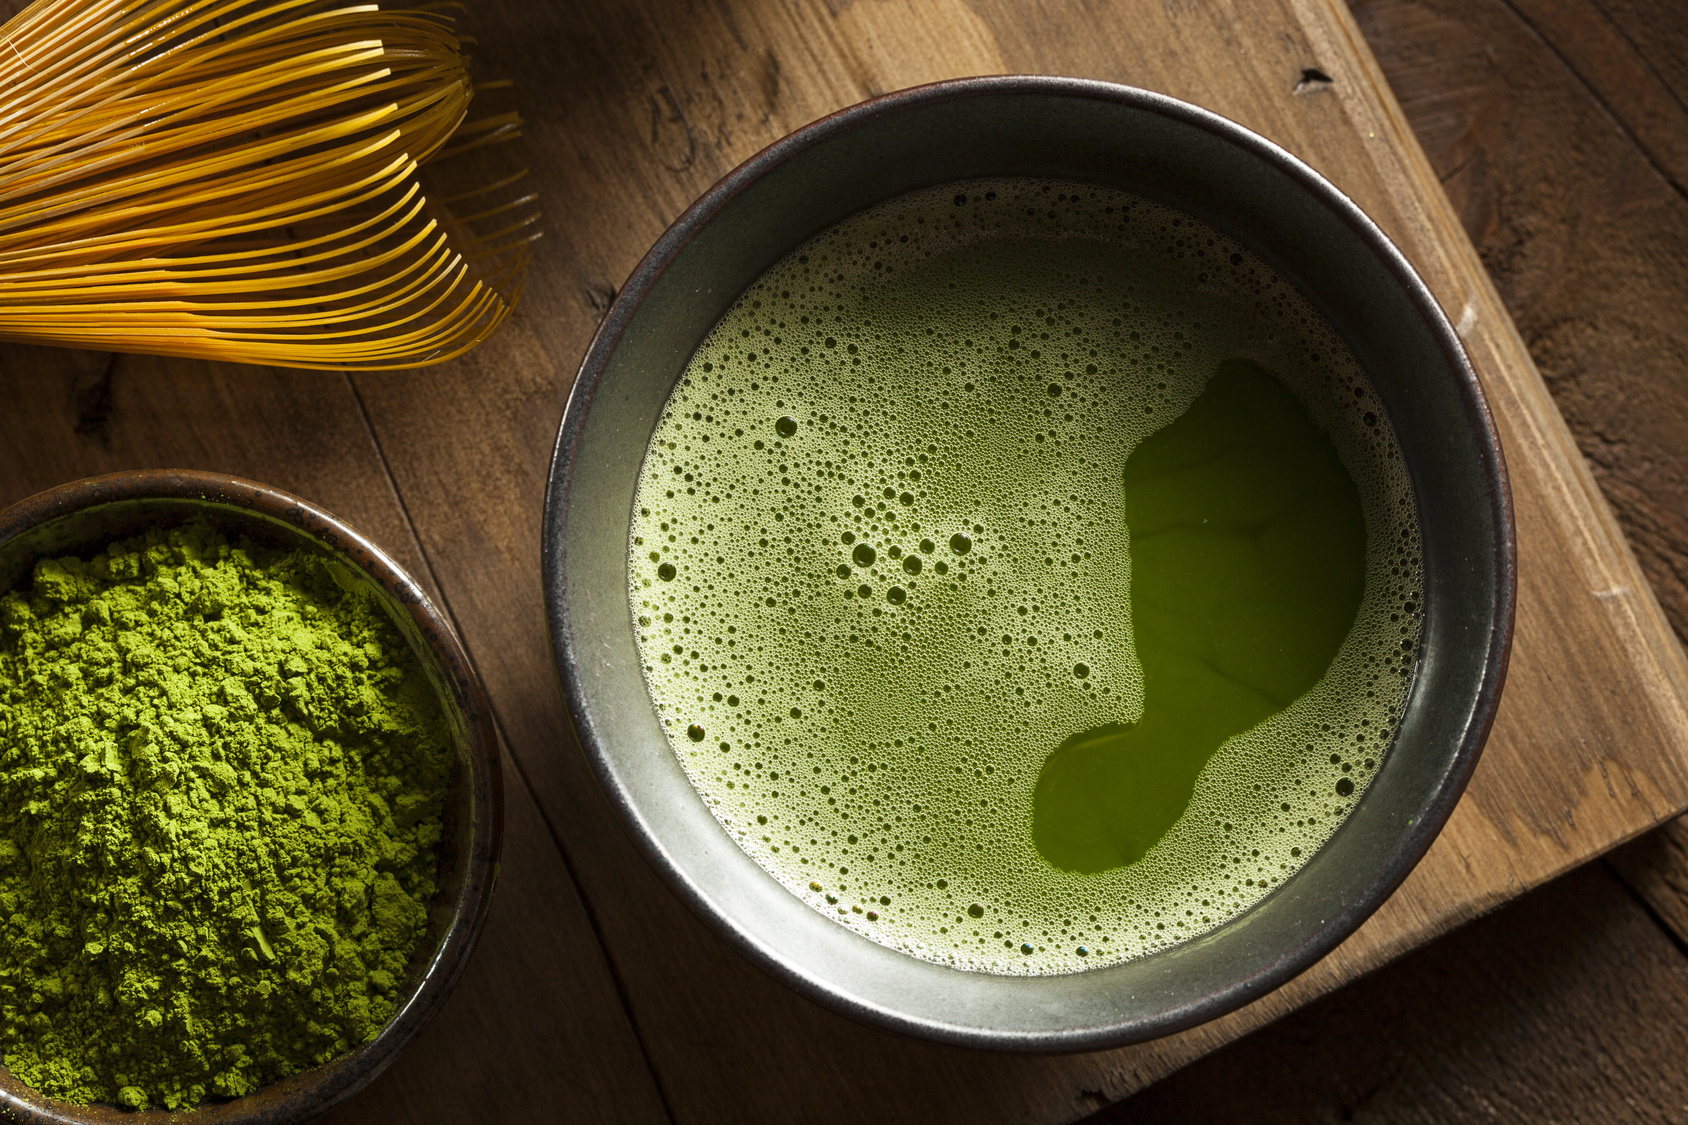 Le Japon ne produit que du thé vert, le noir étant plutôt occidental. Les variétés de thés verts dépendent principalement de la forme des feuilles. © Brent Hofacker, Fotolia